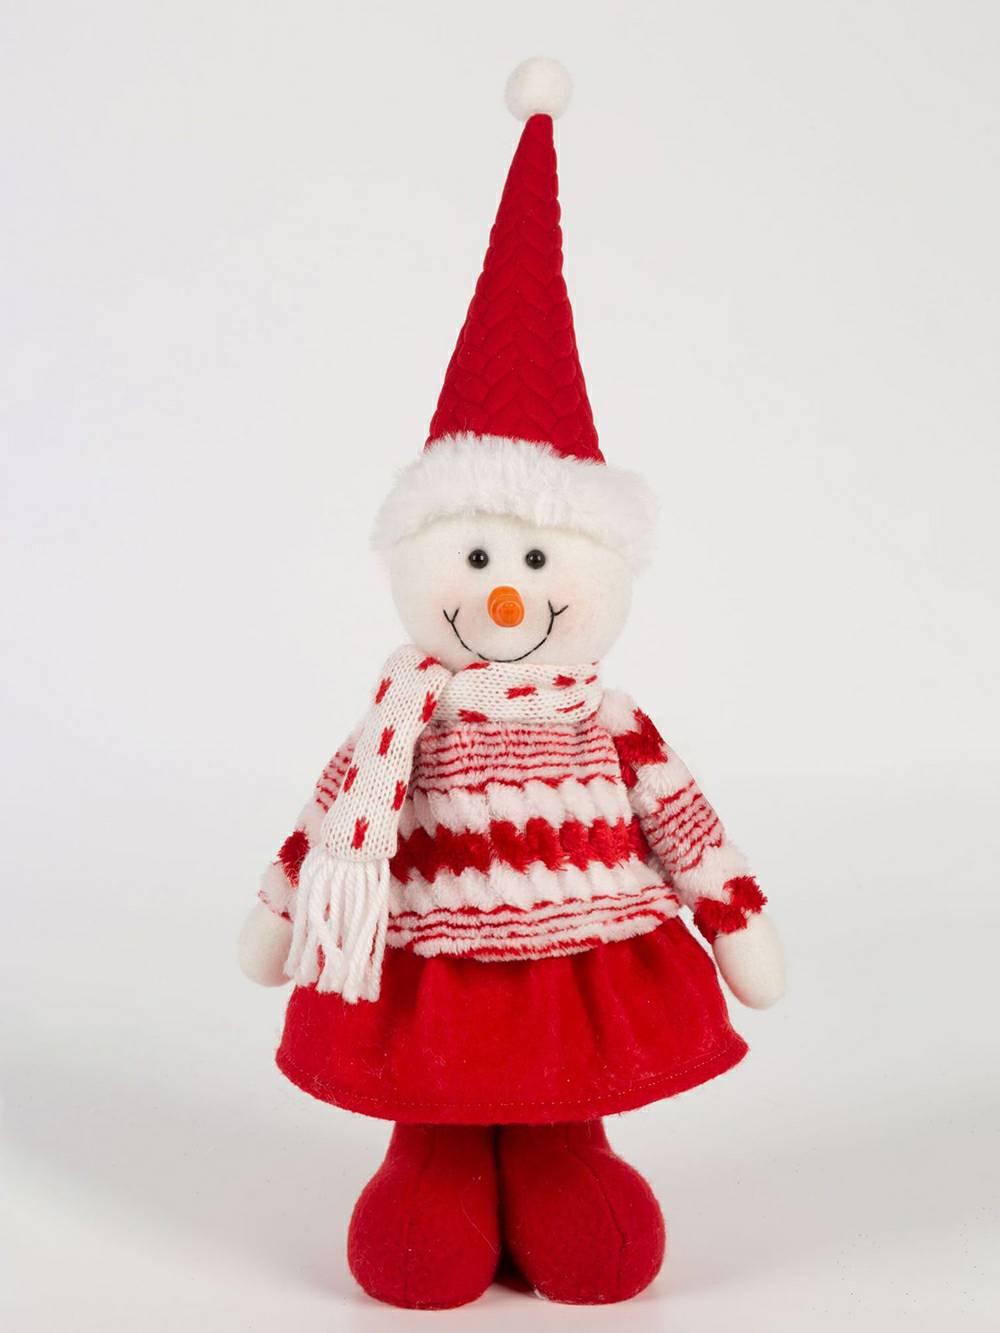 Poupée Rudolph en peluche rouge de Noël, renne et bonhomme de neige